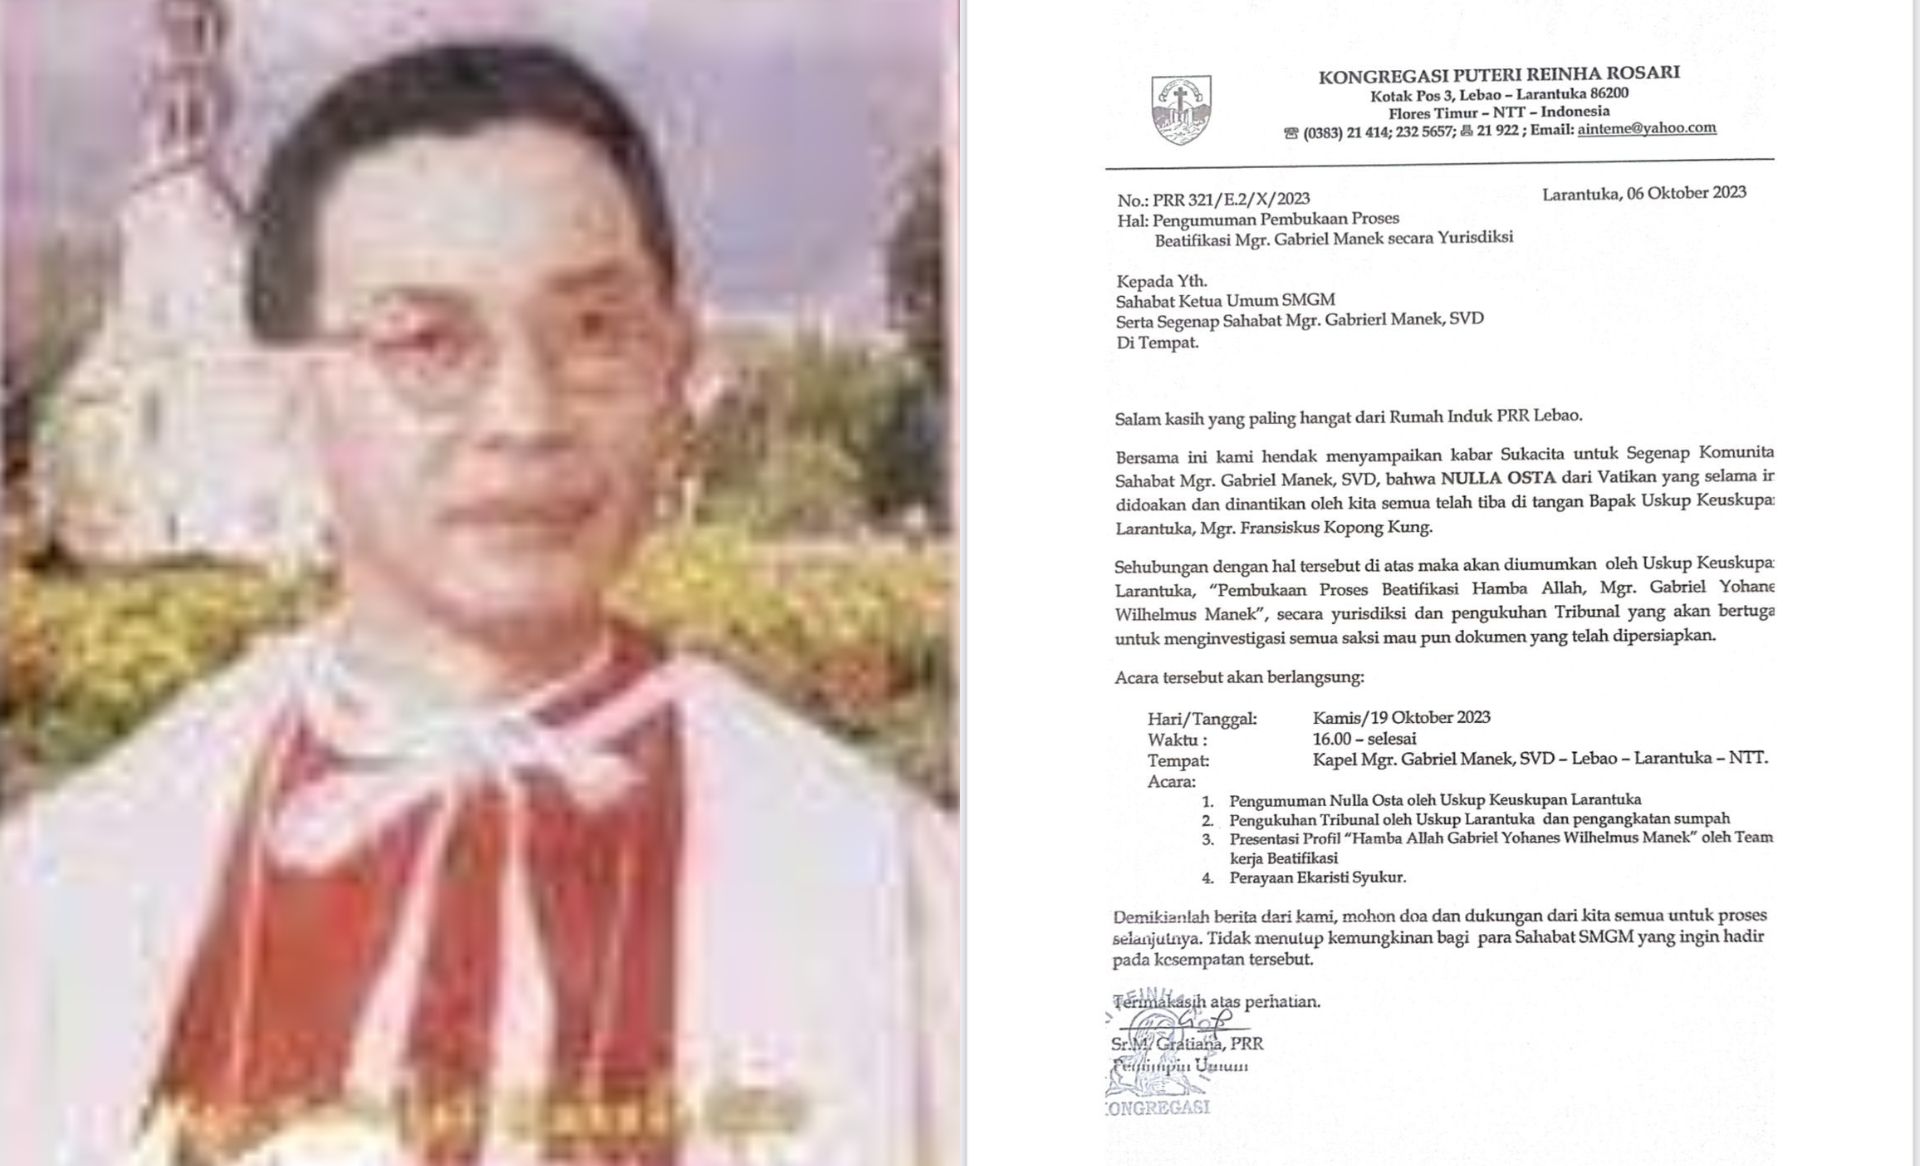 Mgr. Gabriel Yohare Wiihelmus Manek Akan Jadi Orang Suci Pertama dari Indonesia